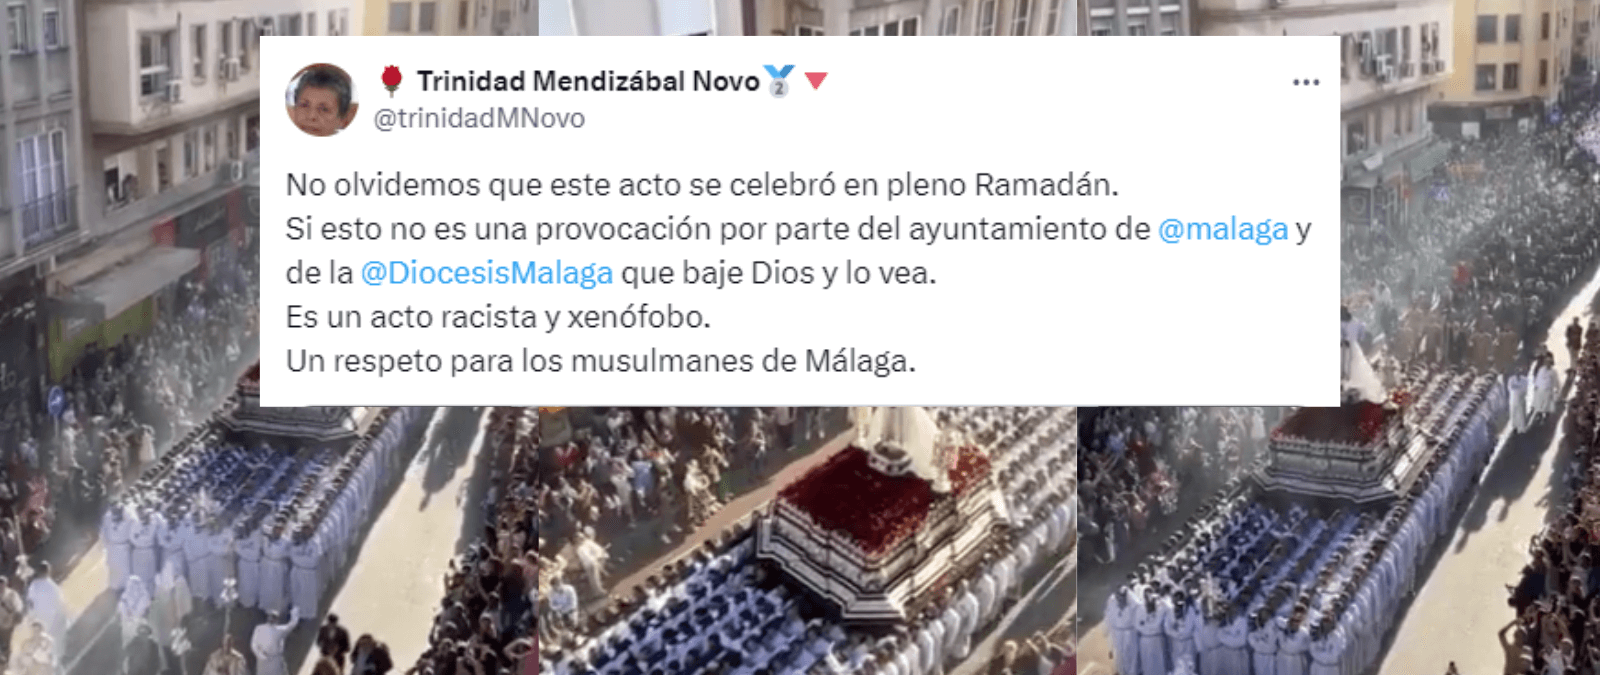 Cuidado con este tuit de Trinidad Mendizábal Novo (‘trinidadMNovo’) llamando “acto xenófobo y racista” a una procesión de Semana Santa por coincidir con el Ramadán: es una cuenta trol